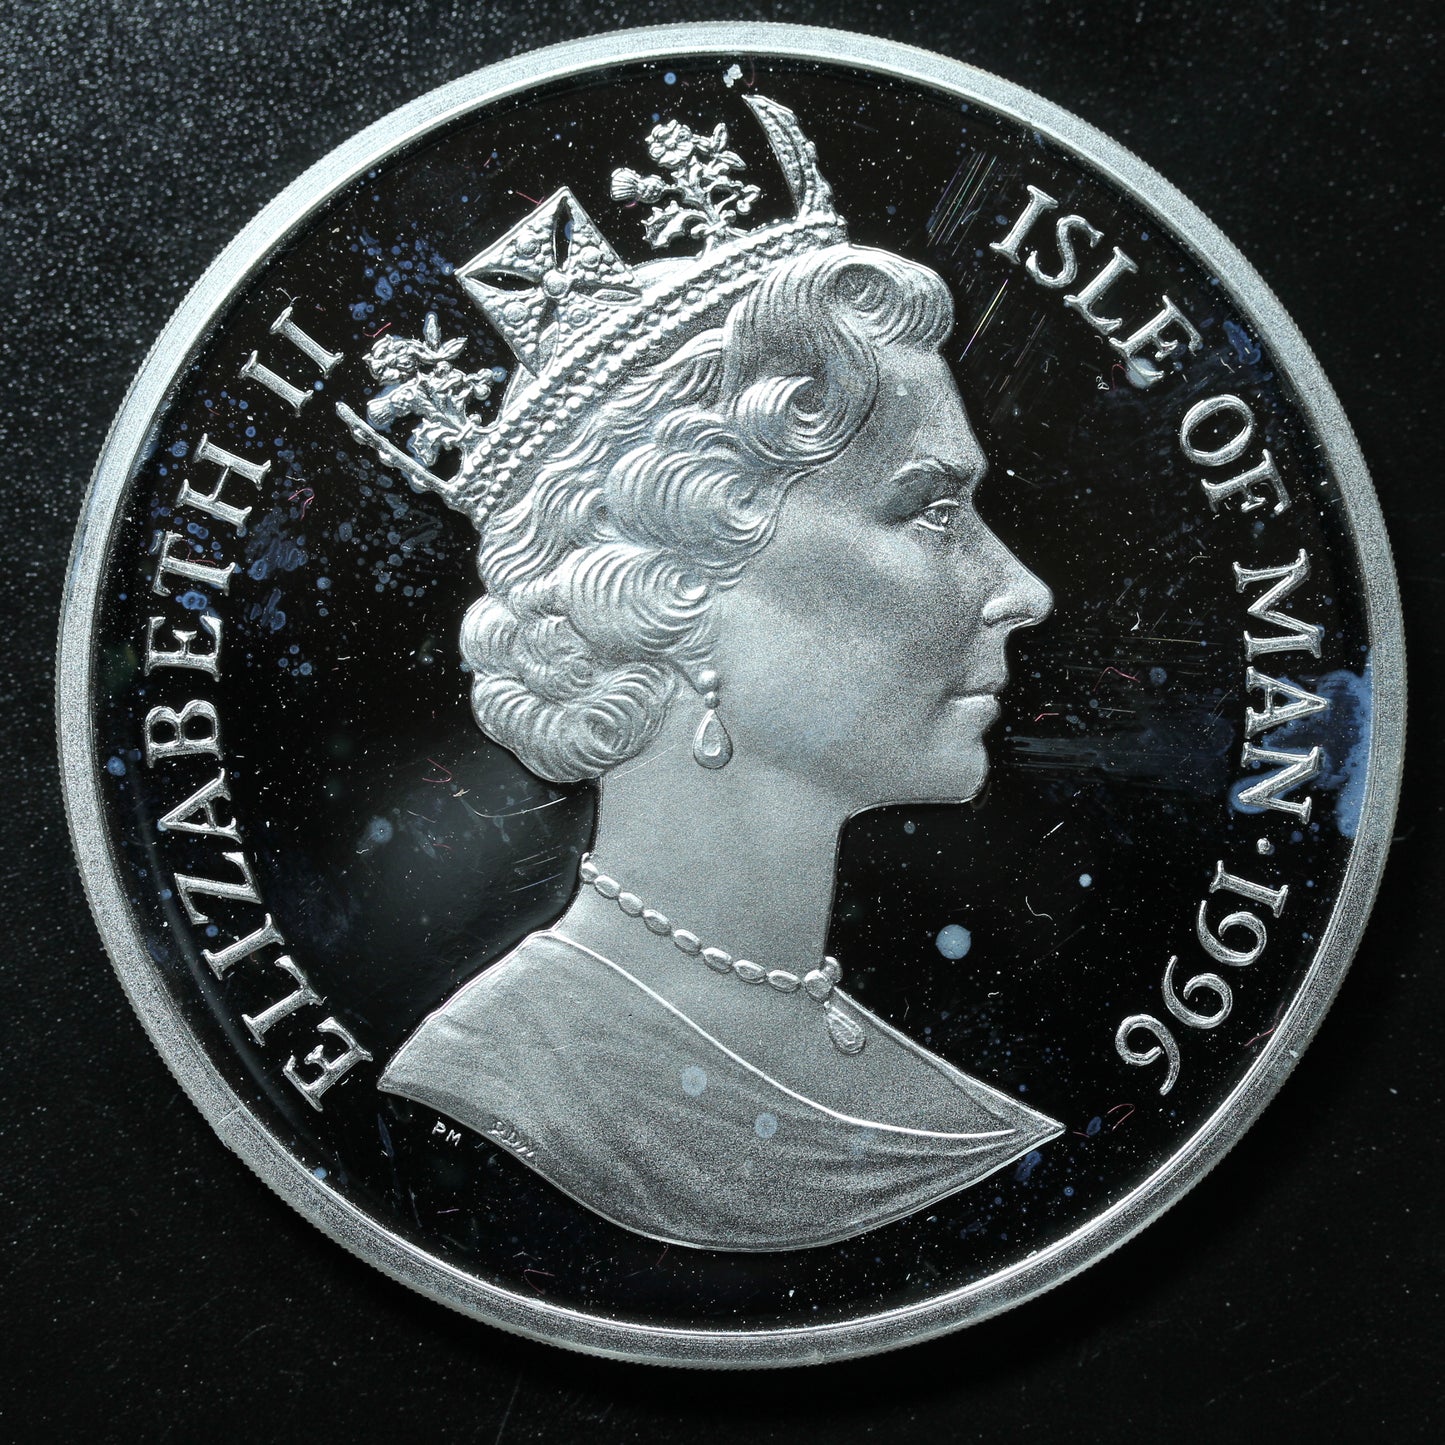 1996 Isle Of Man 999.9 Fine Silver 5 Crown - Legend of King Arthur "King Arthur"